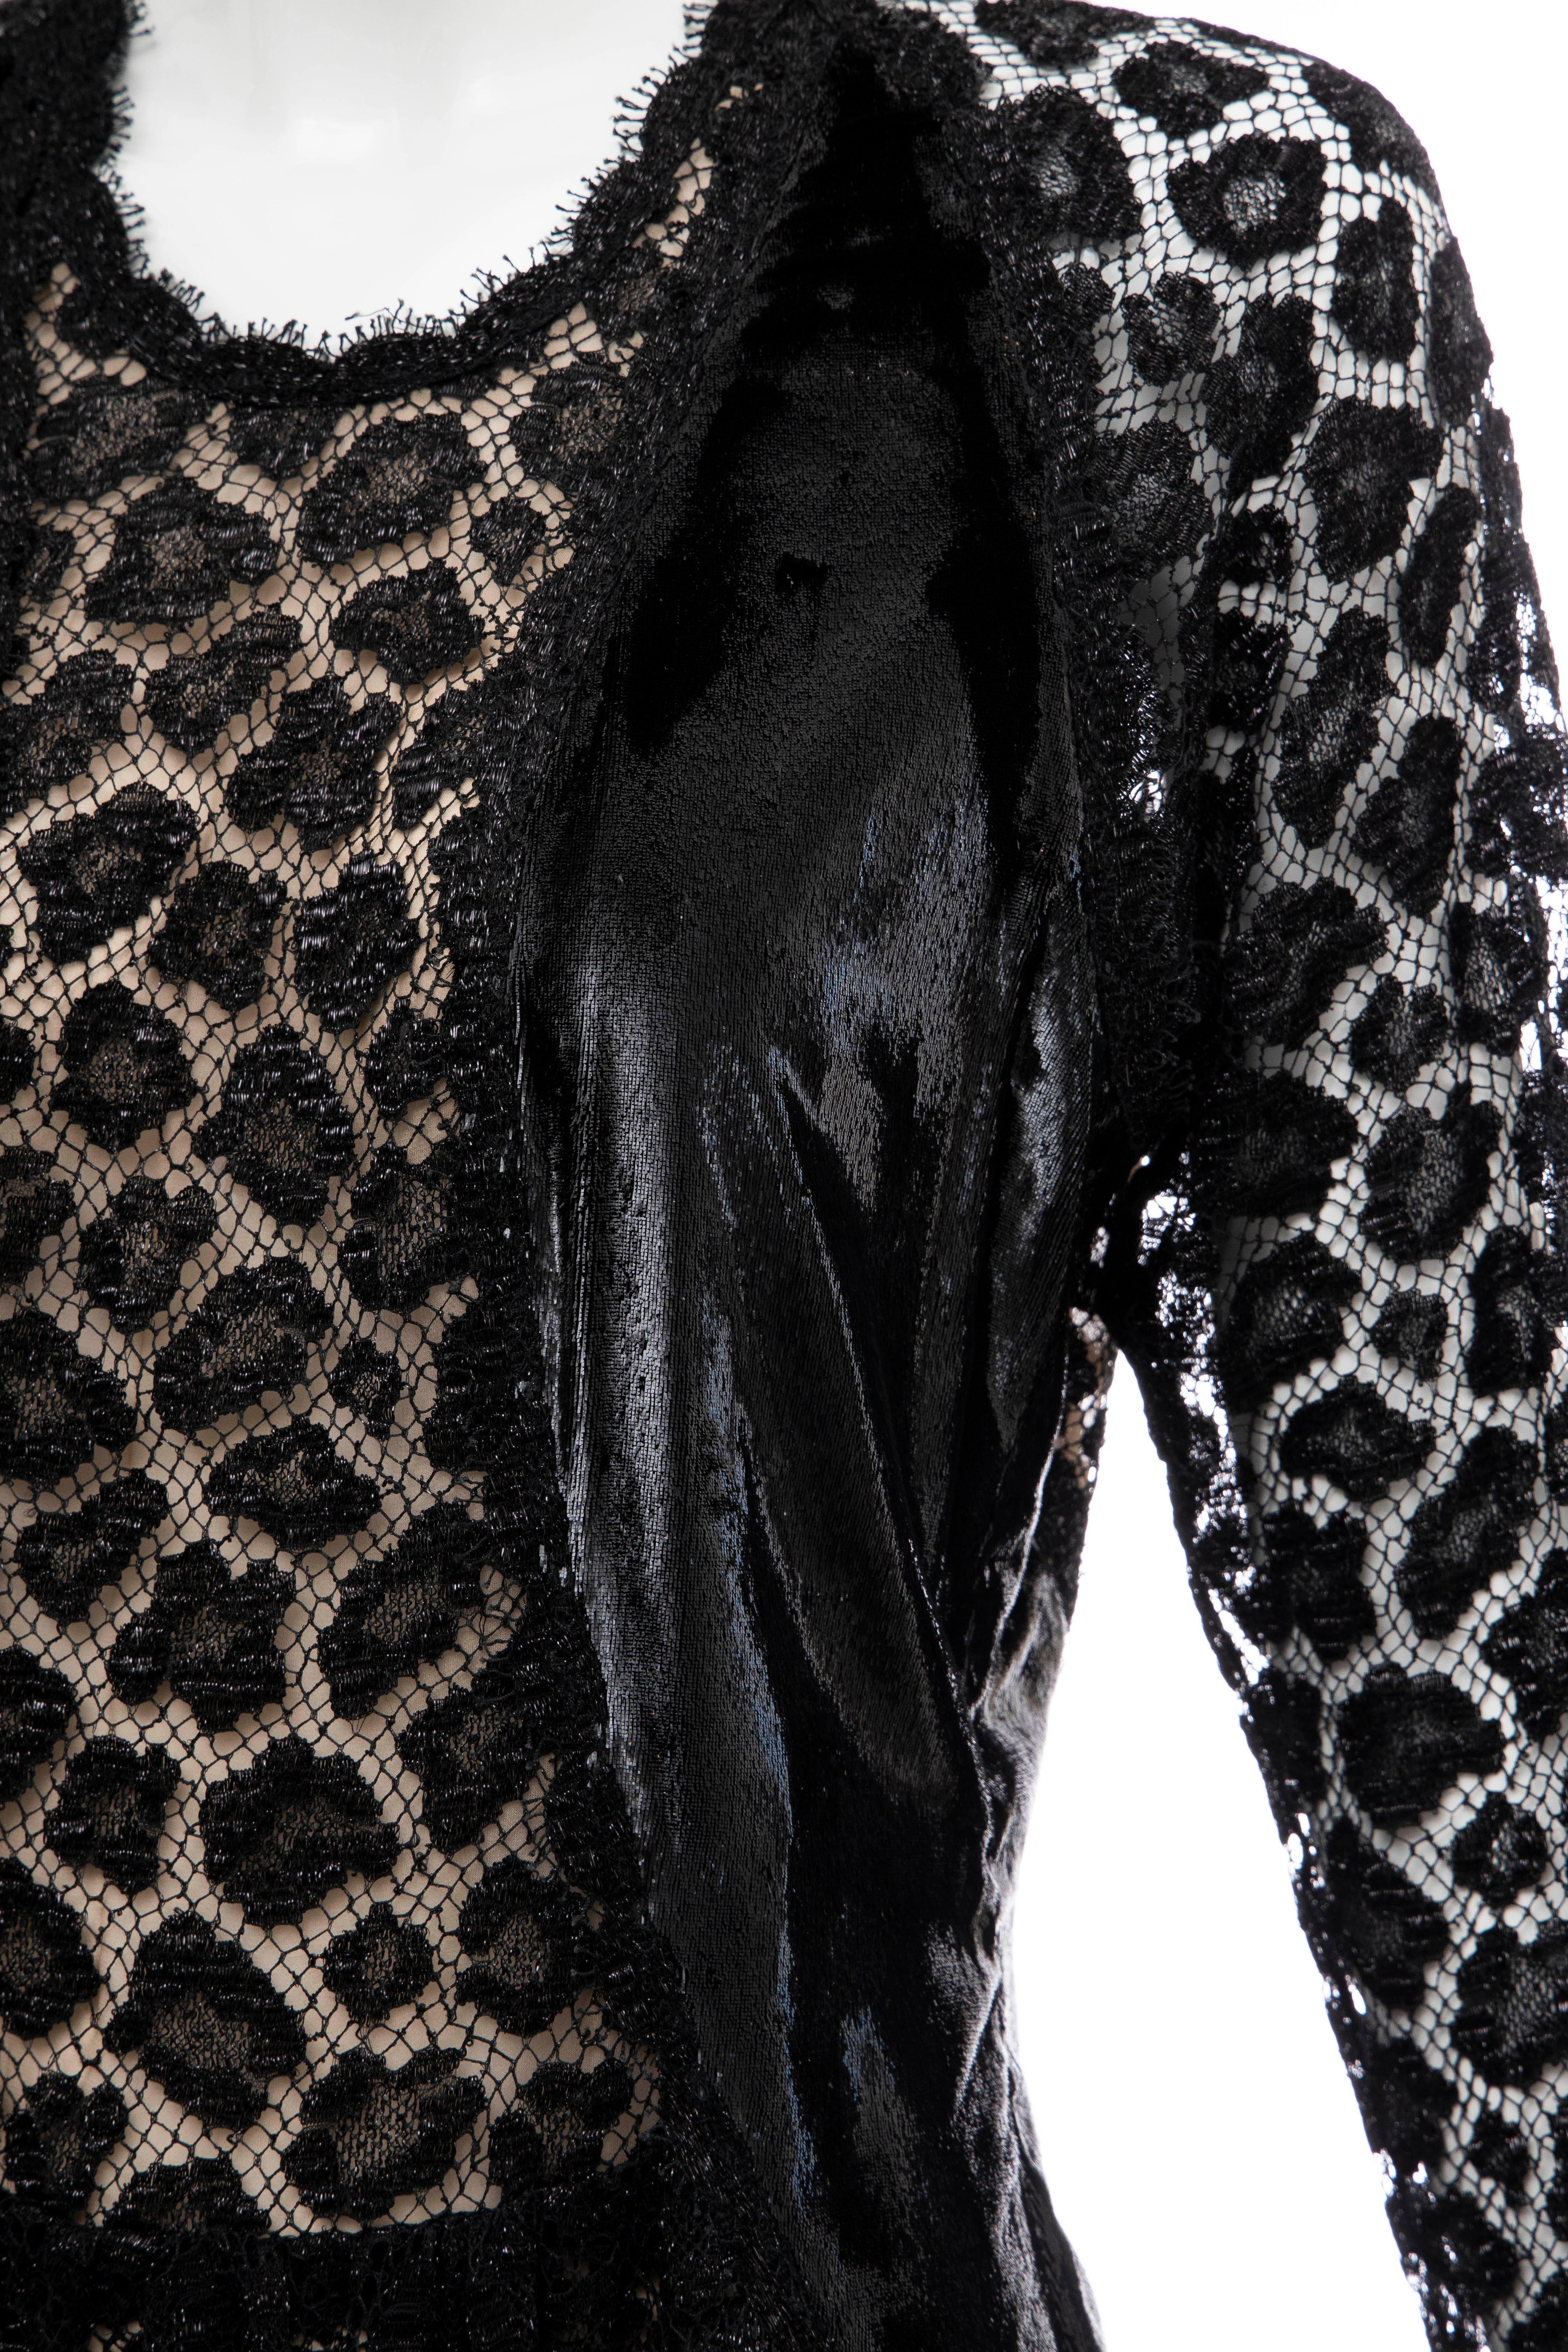 Geoffrey Beene Black Metallic Leopard Lace Dress 